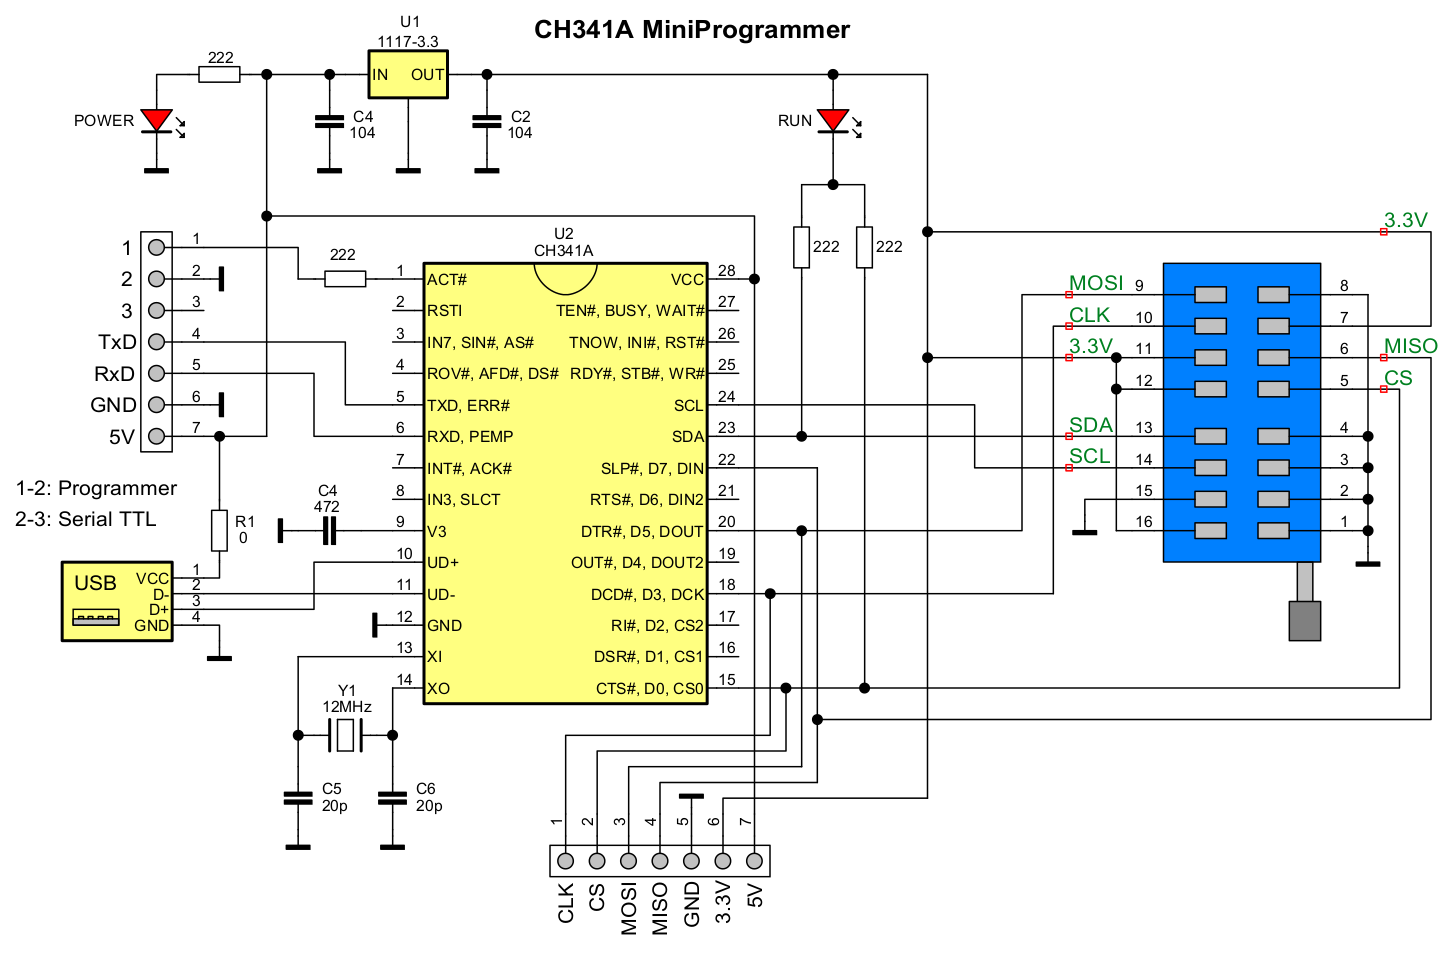 ch341a_miniprogrammer